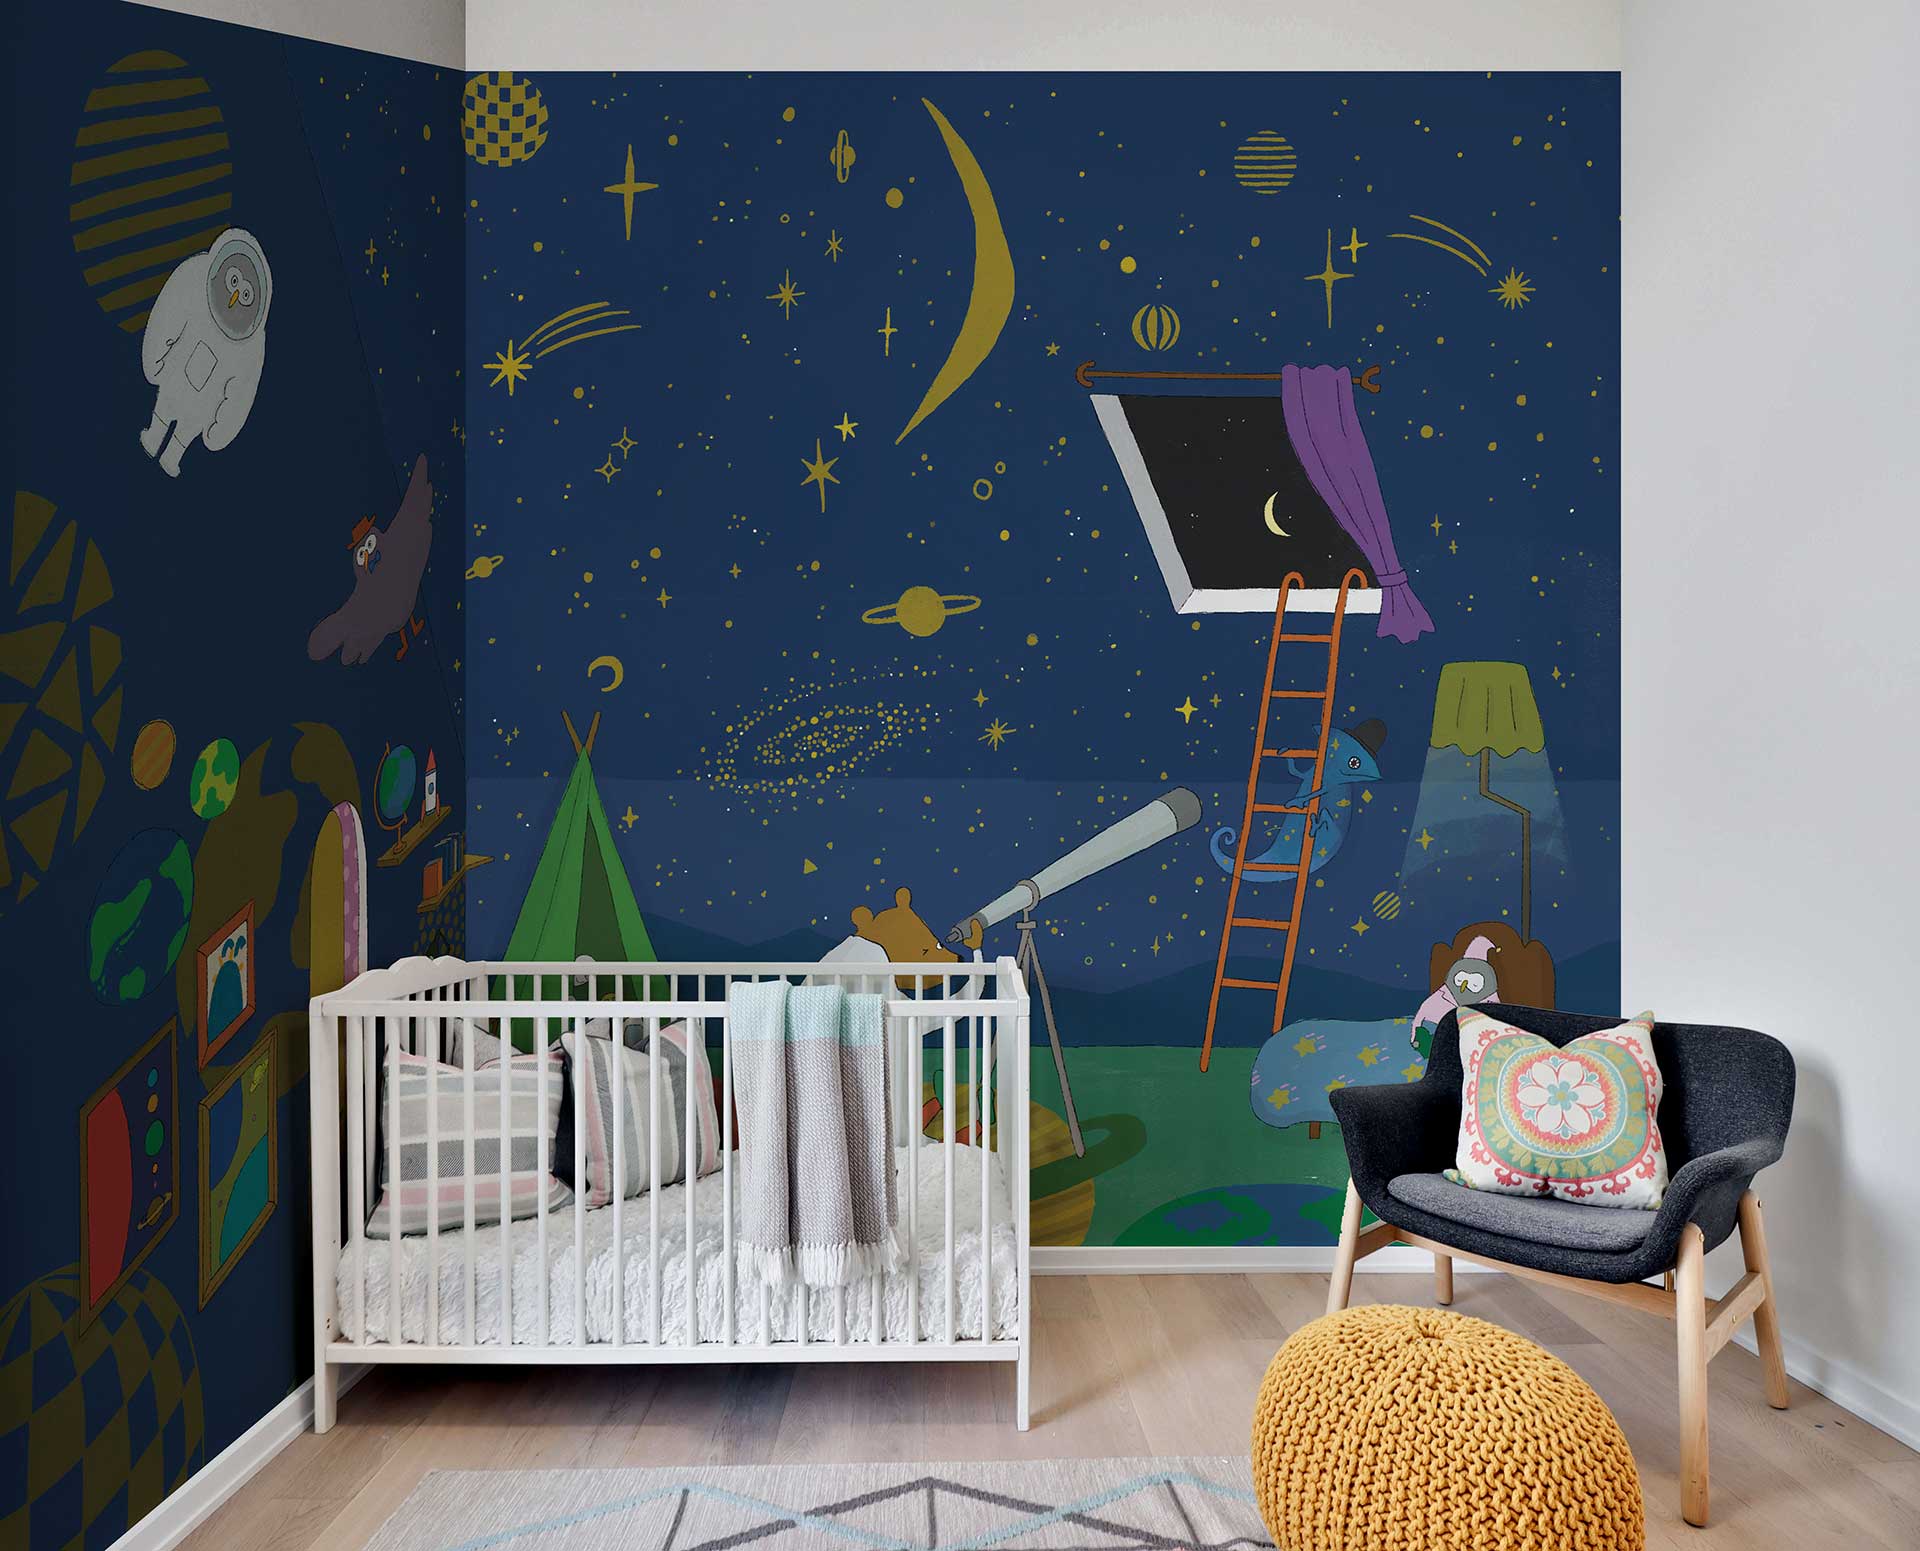 ベビーベッドを置いた部屋は星空を描いた落ち着いた壁紙を。夜空を見るのが大好きなクマが主人公の壁紙だ。